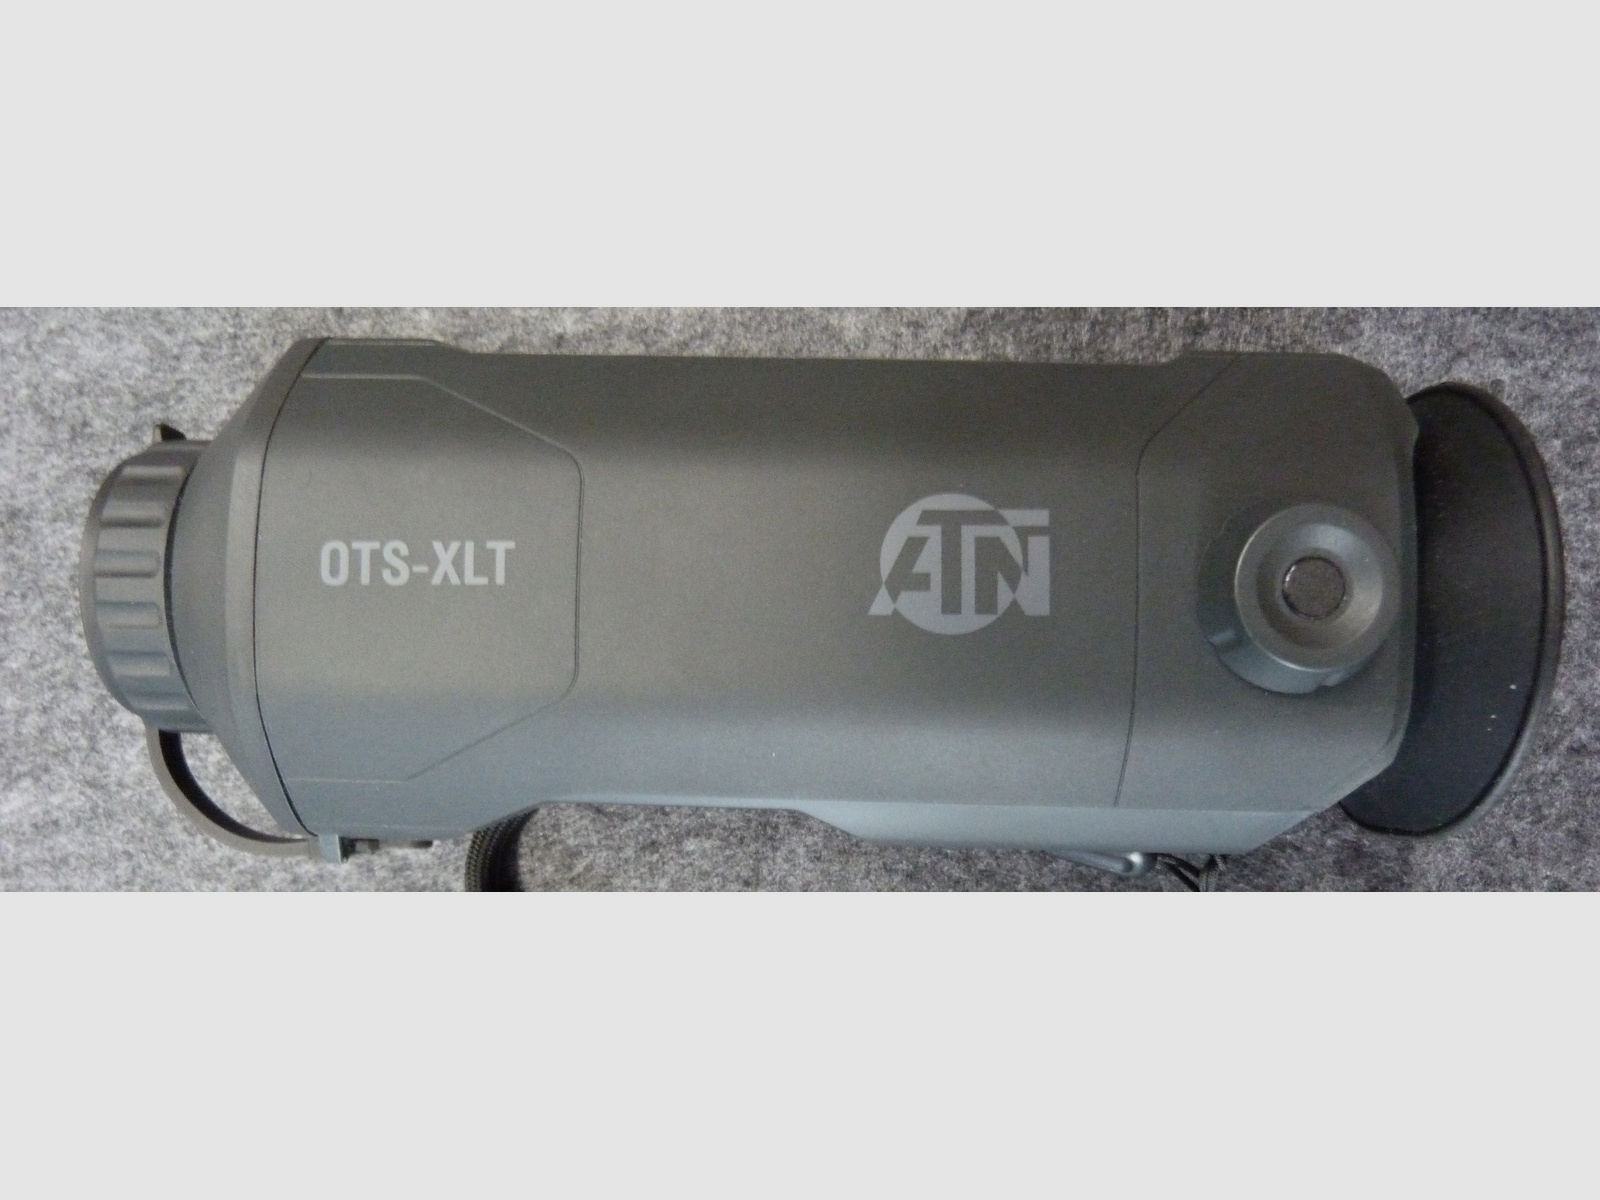 Wärmebildgerät ATN OTS XLT 160 2,5-10x